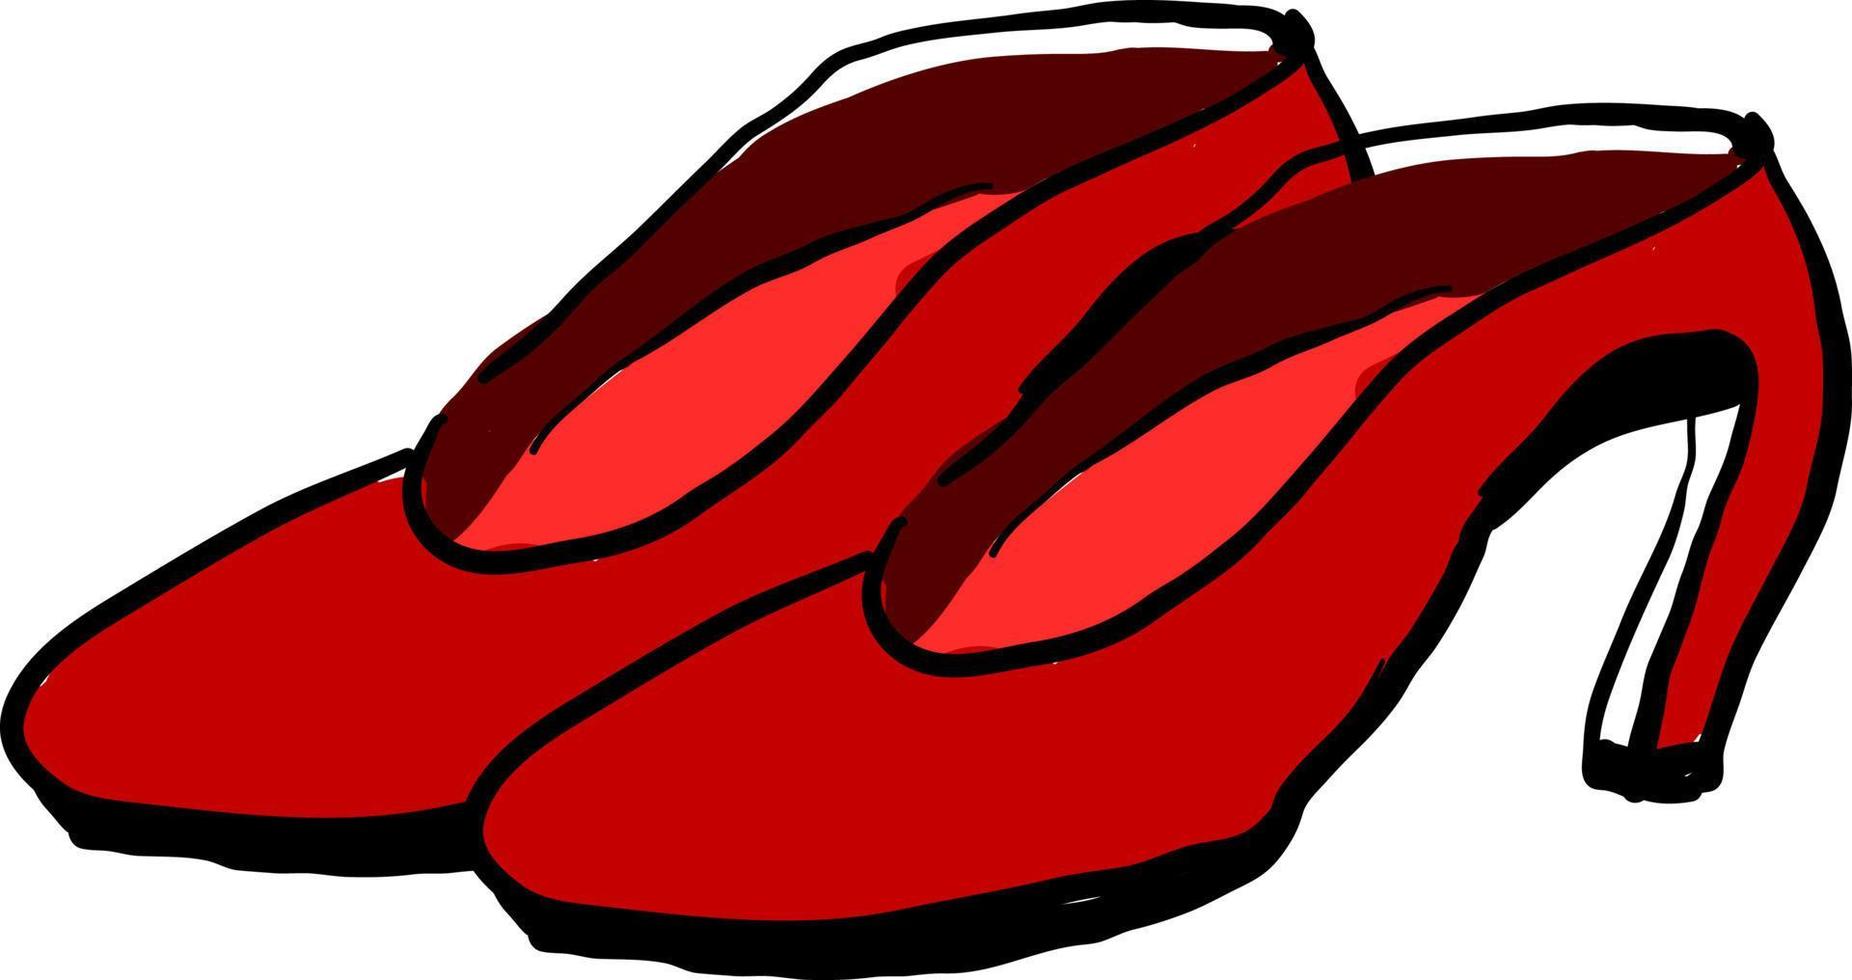 rote Damenschuhe, Illustration, Vektor auf weißem Hintergrund.